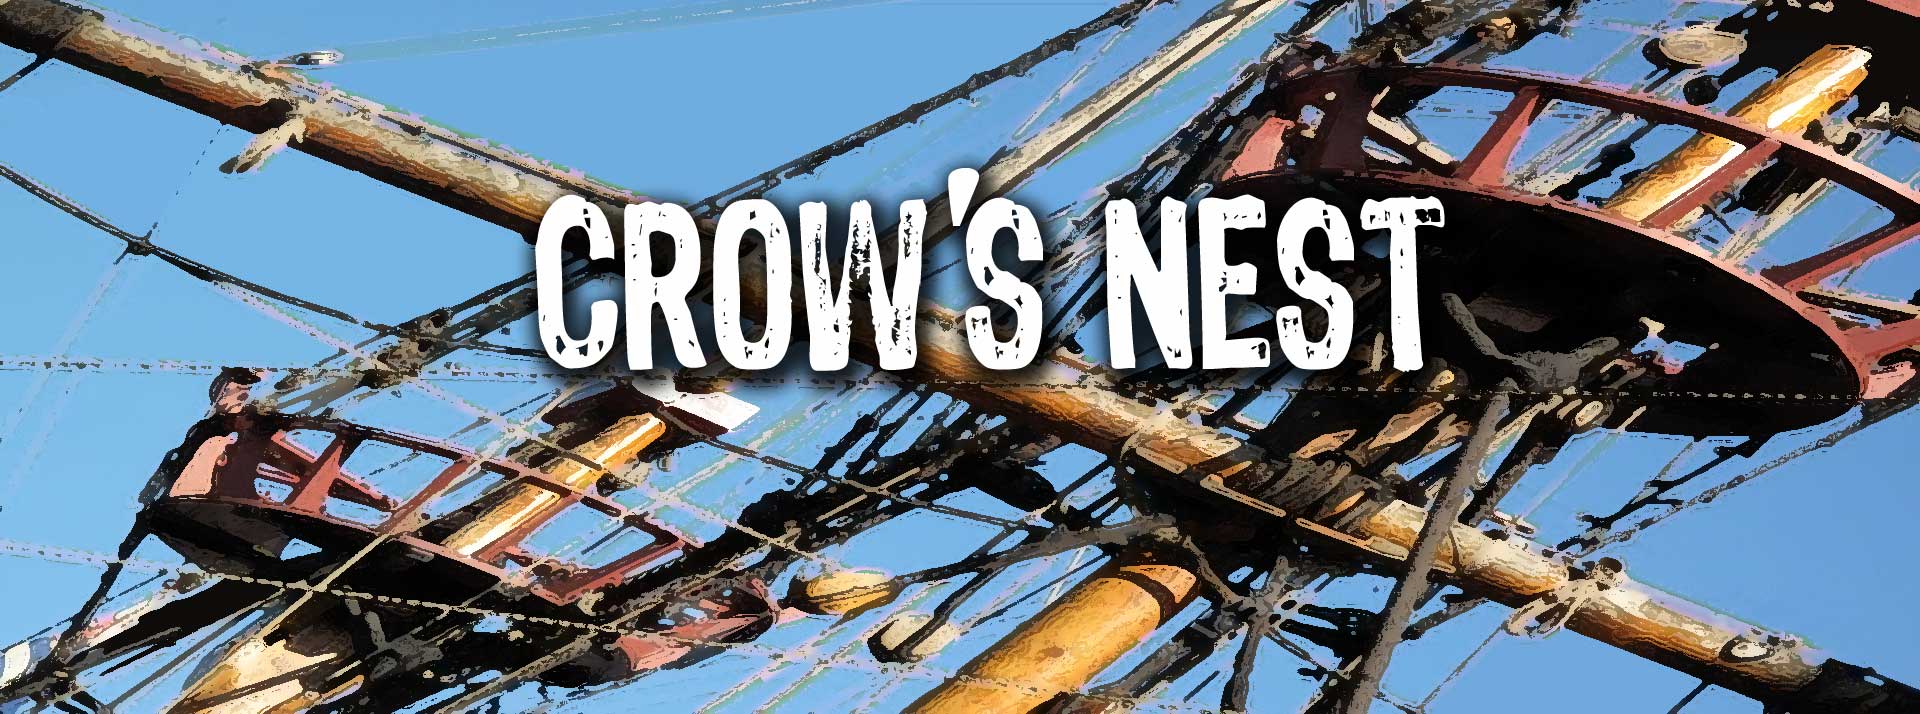 Navy Crows Nest Header